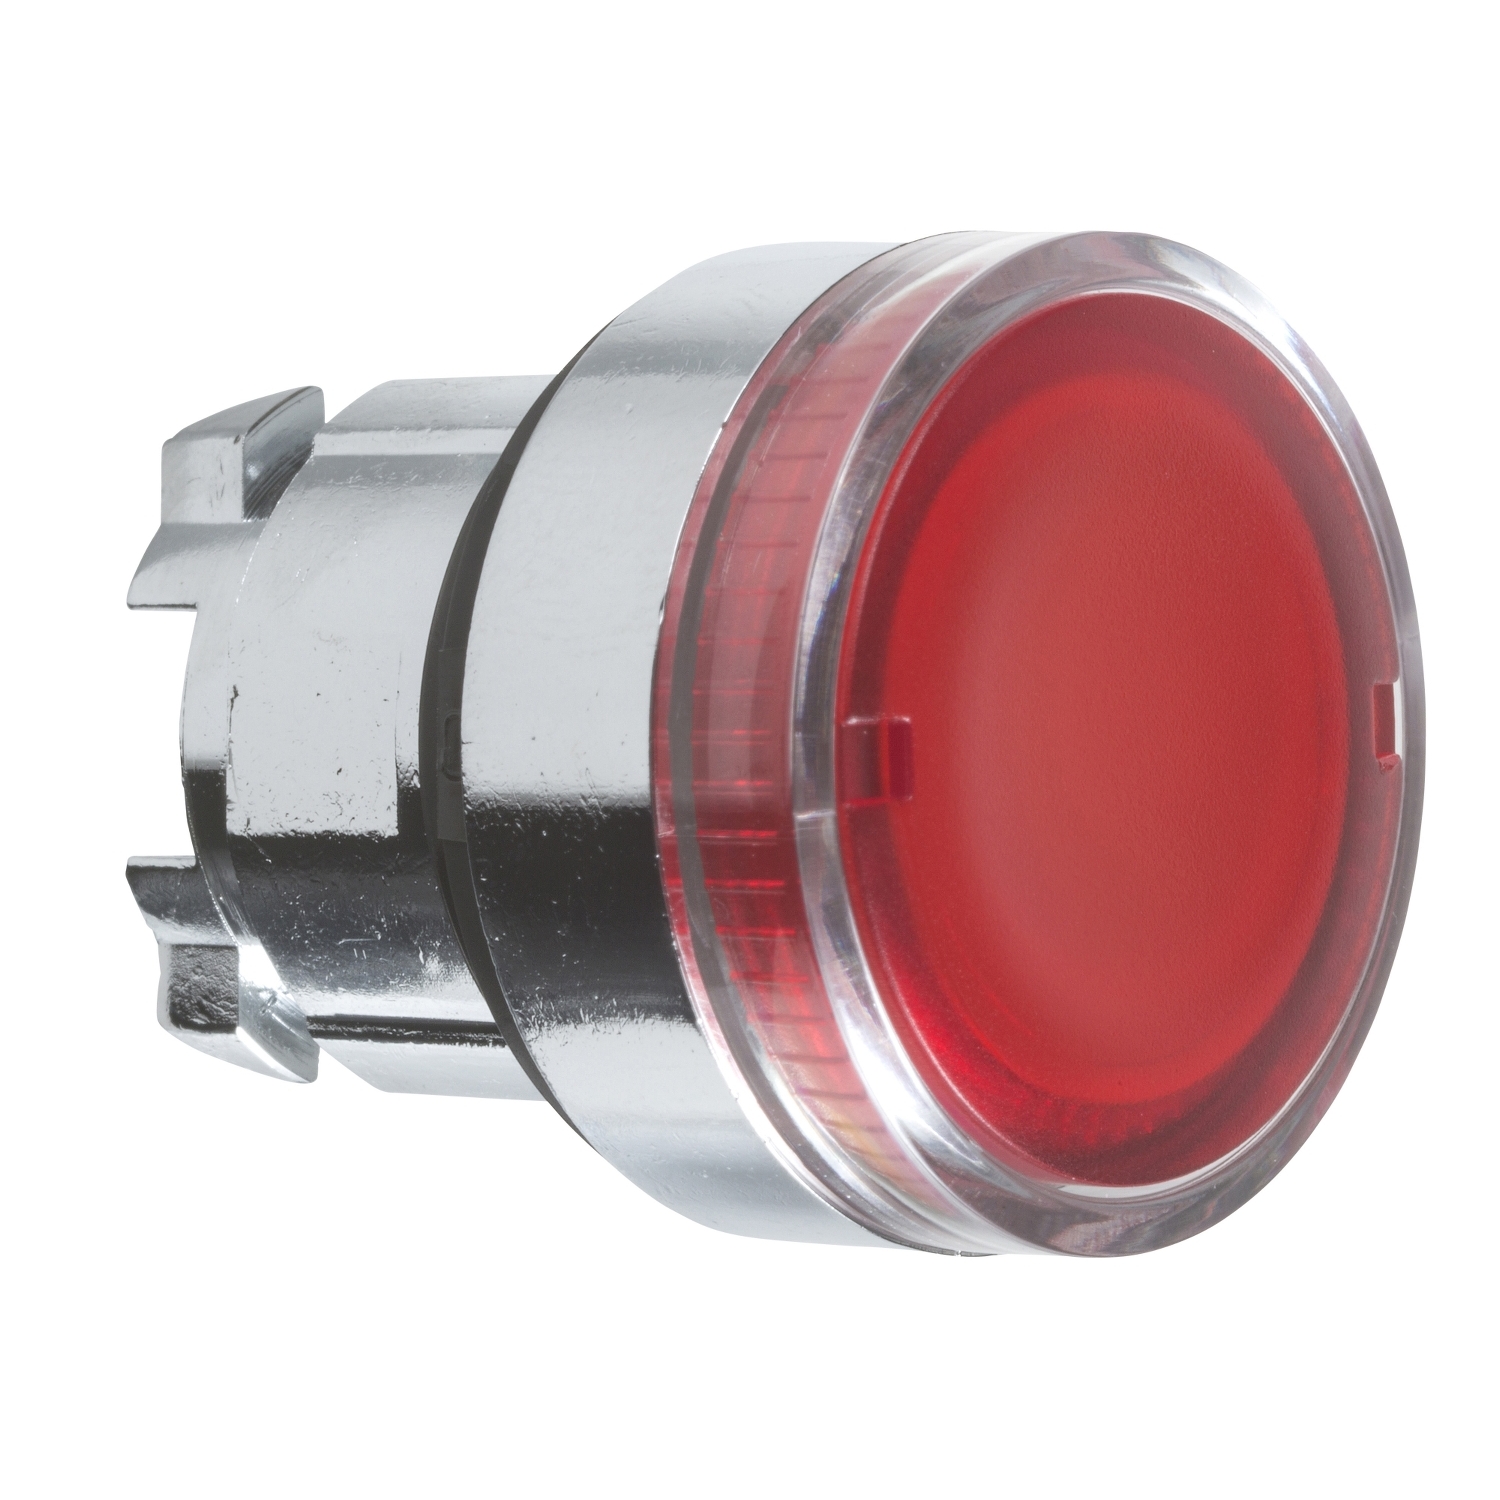 ZB4BW34 Tête bouton lumière rouge ø 22 pour lampe BA9s